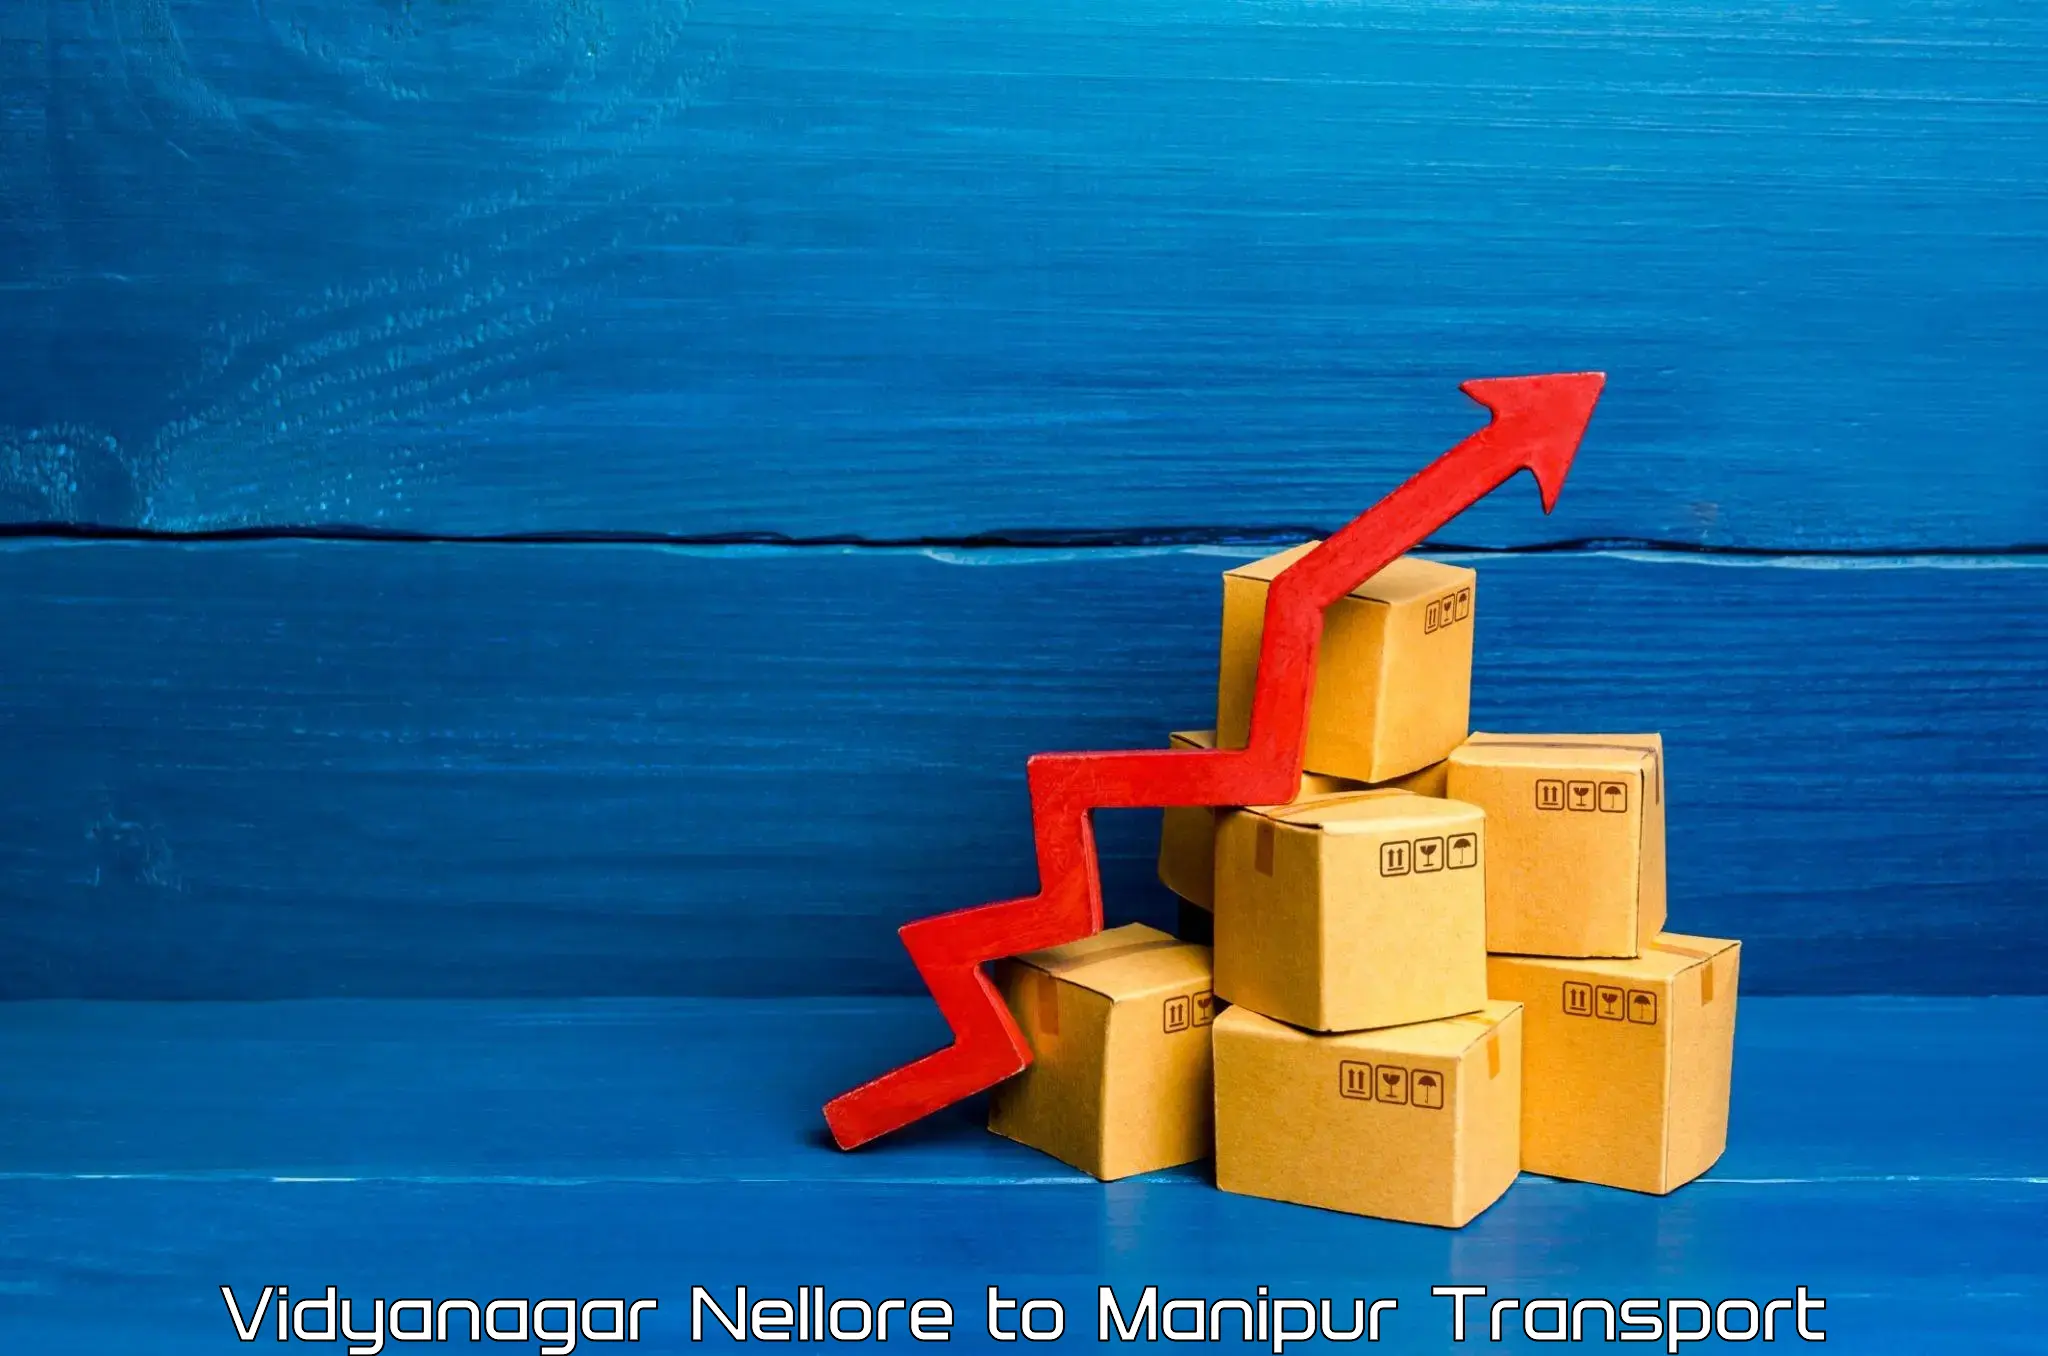 International cargo transportation services Vidyanagar Nellore to Moirang